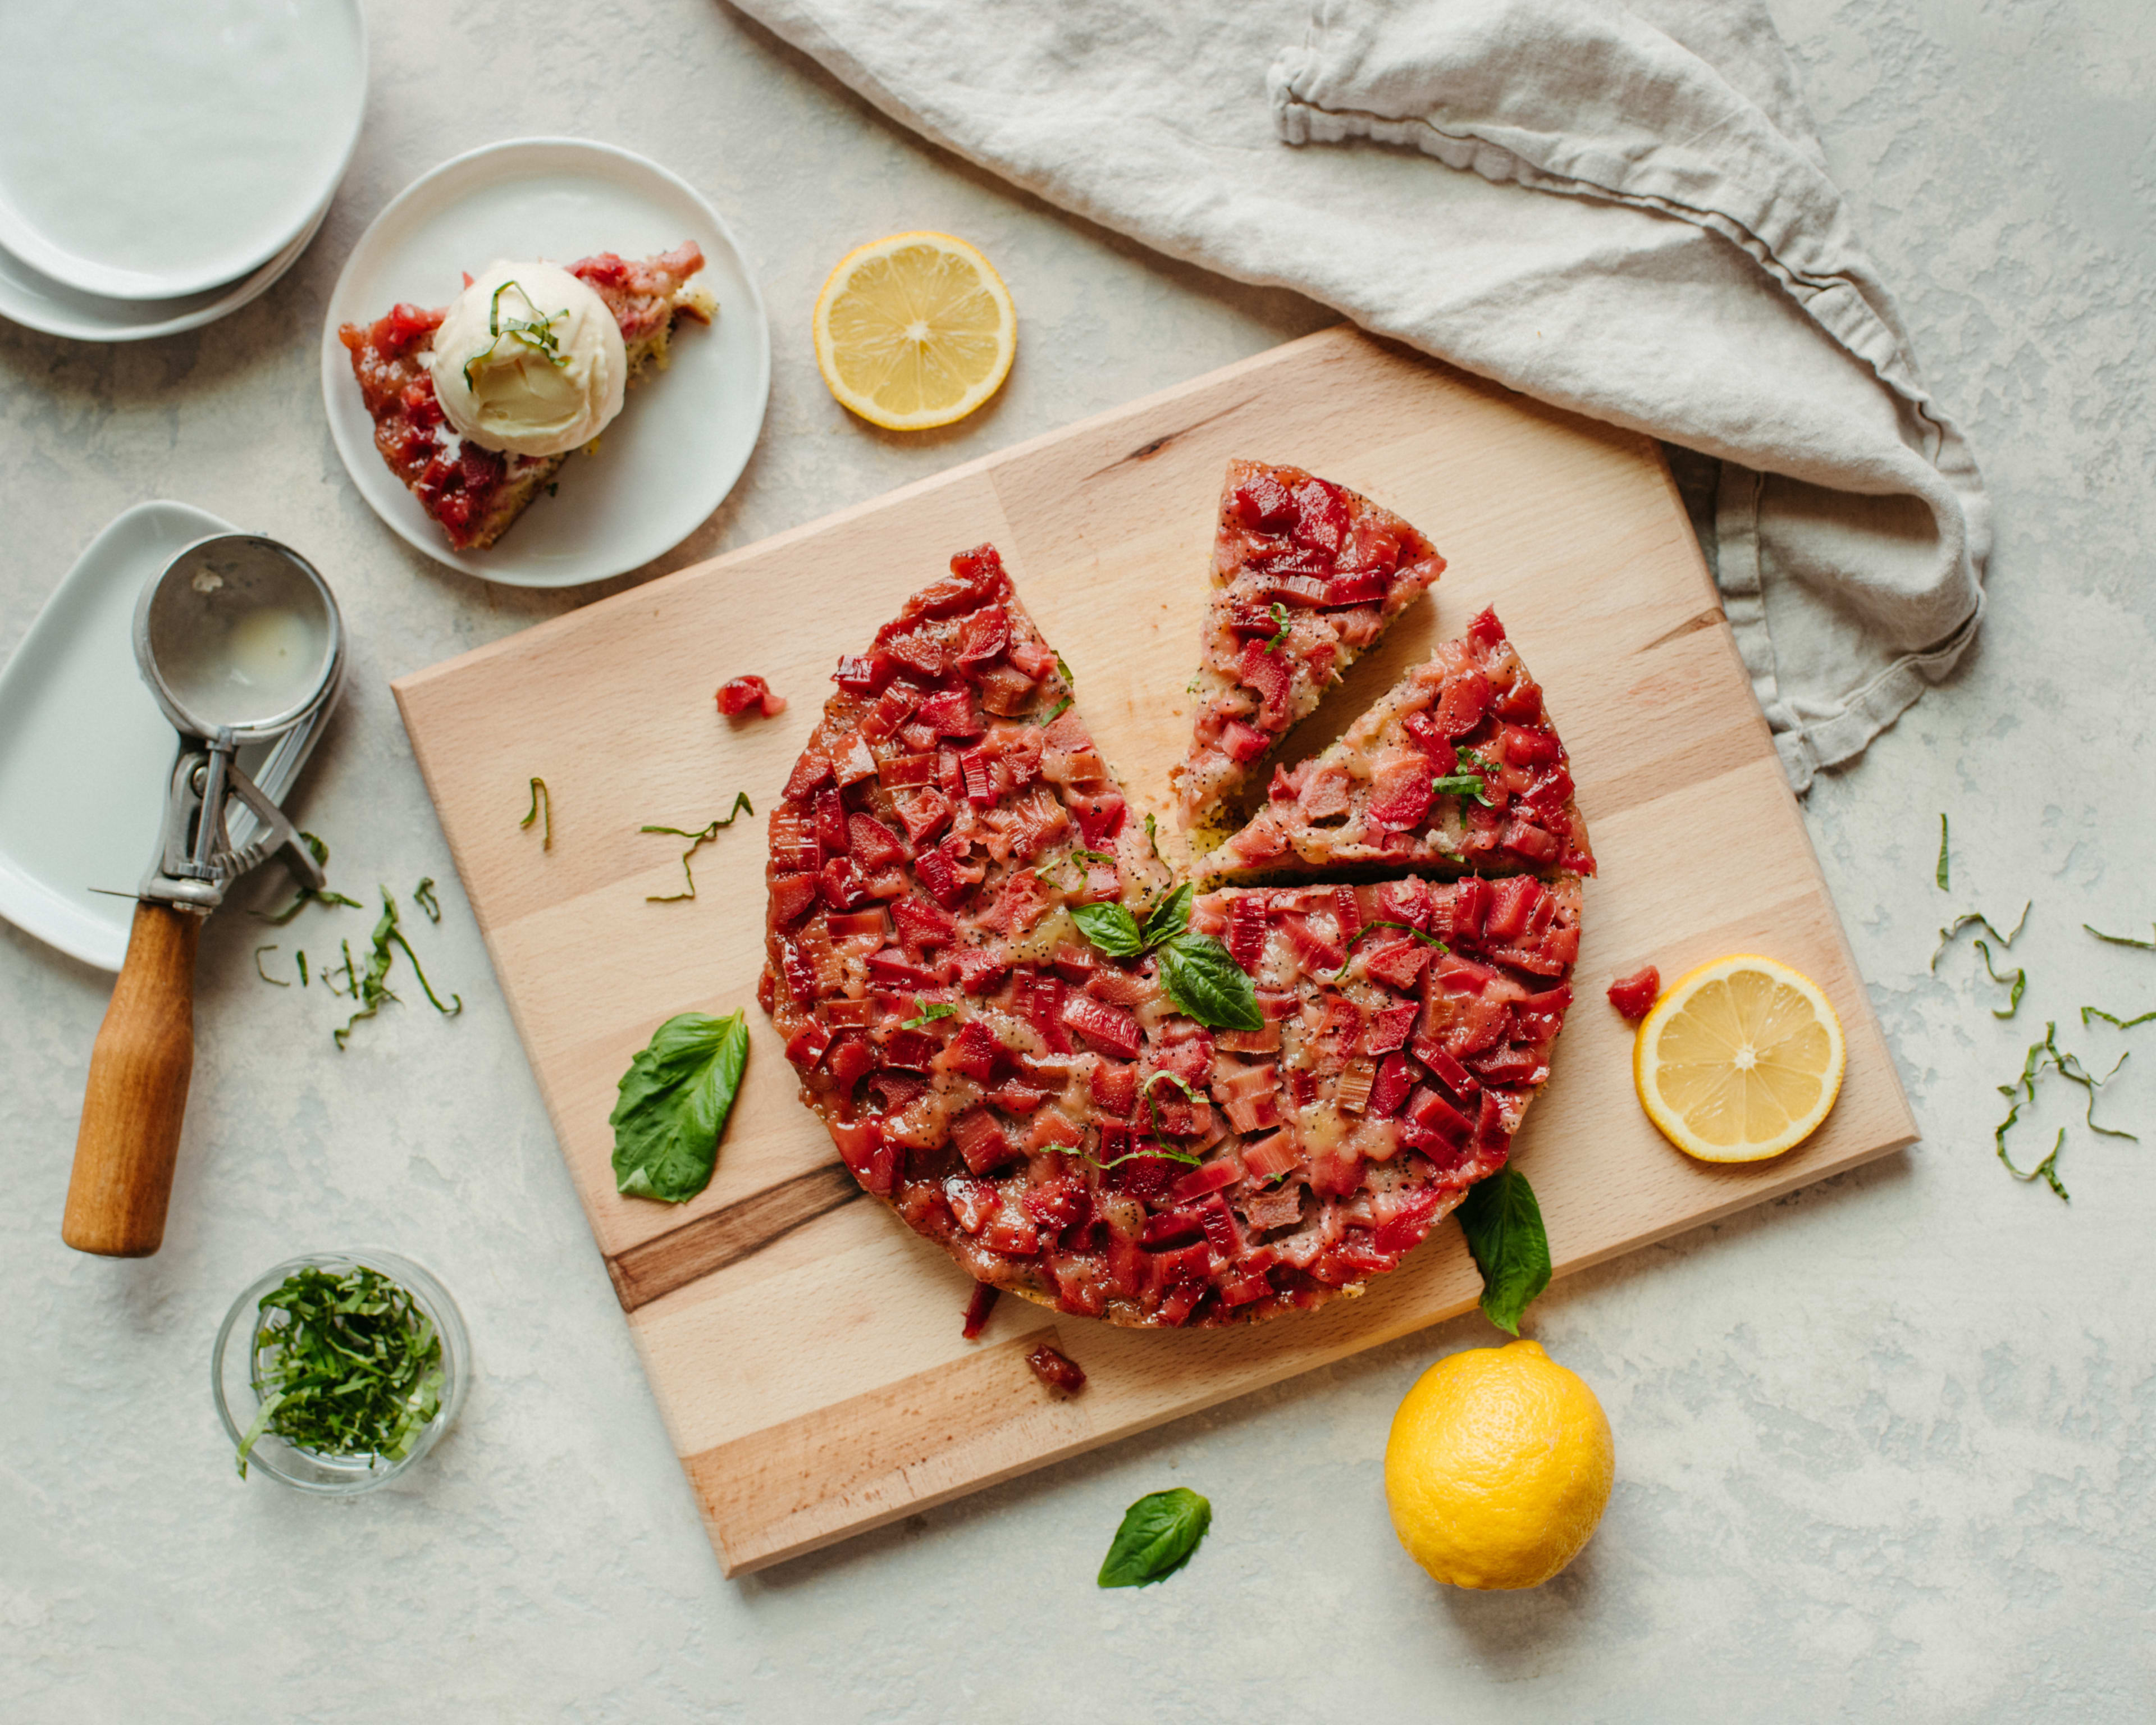 Une pizza pour un shooting photo culinaire sur une planche à découper avec des tranches découpées.